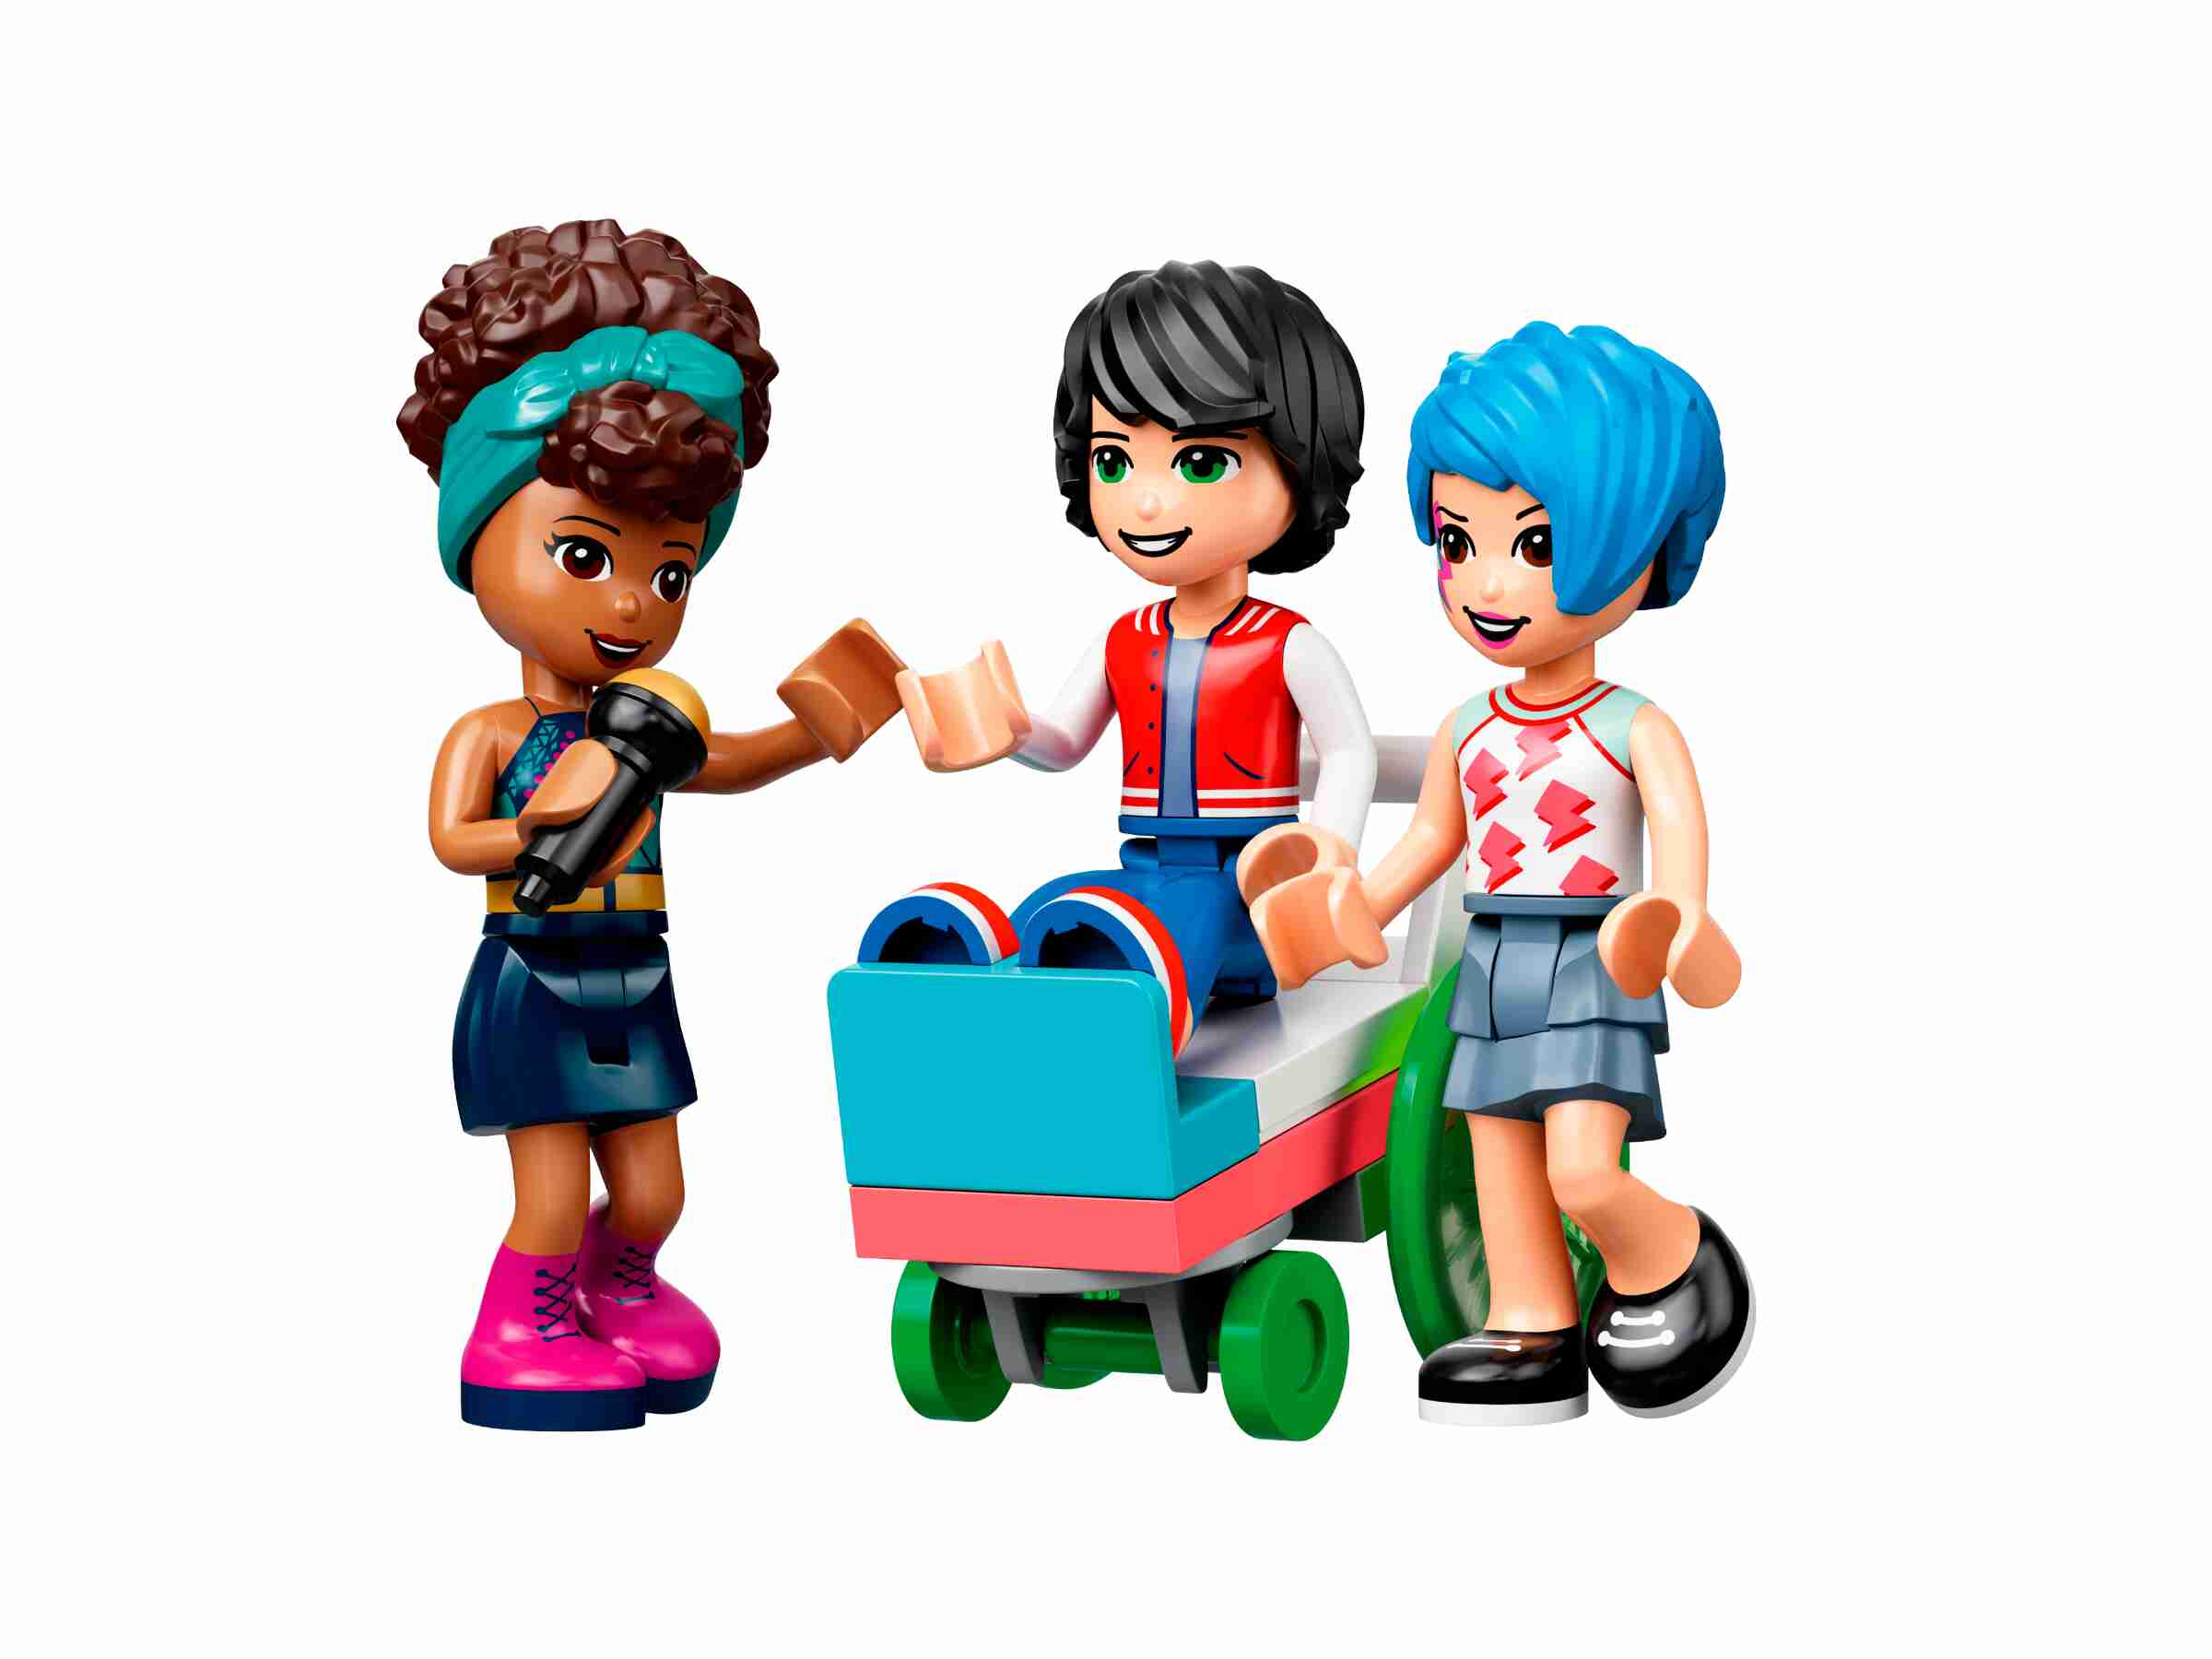 LEGO 41708 Friends Rollschuhdisco, mit Bowlingbahn, 3 Spielfiguren, viel Zubehör